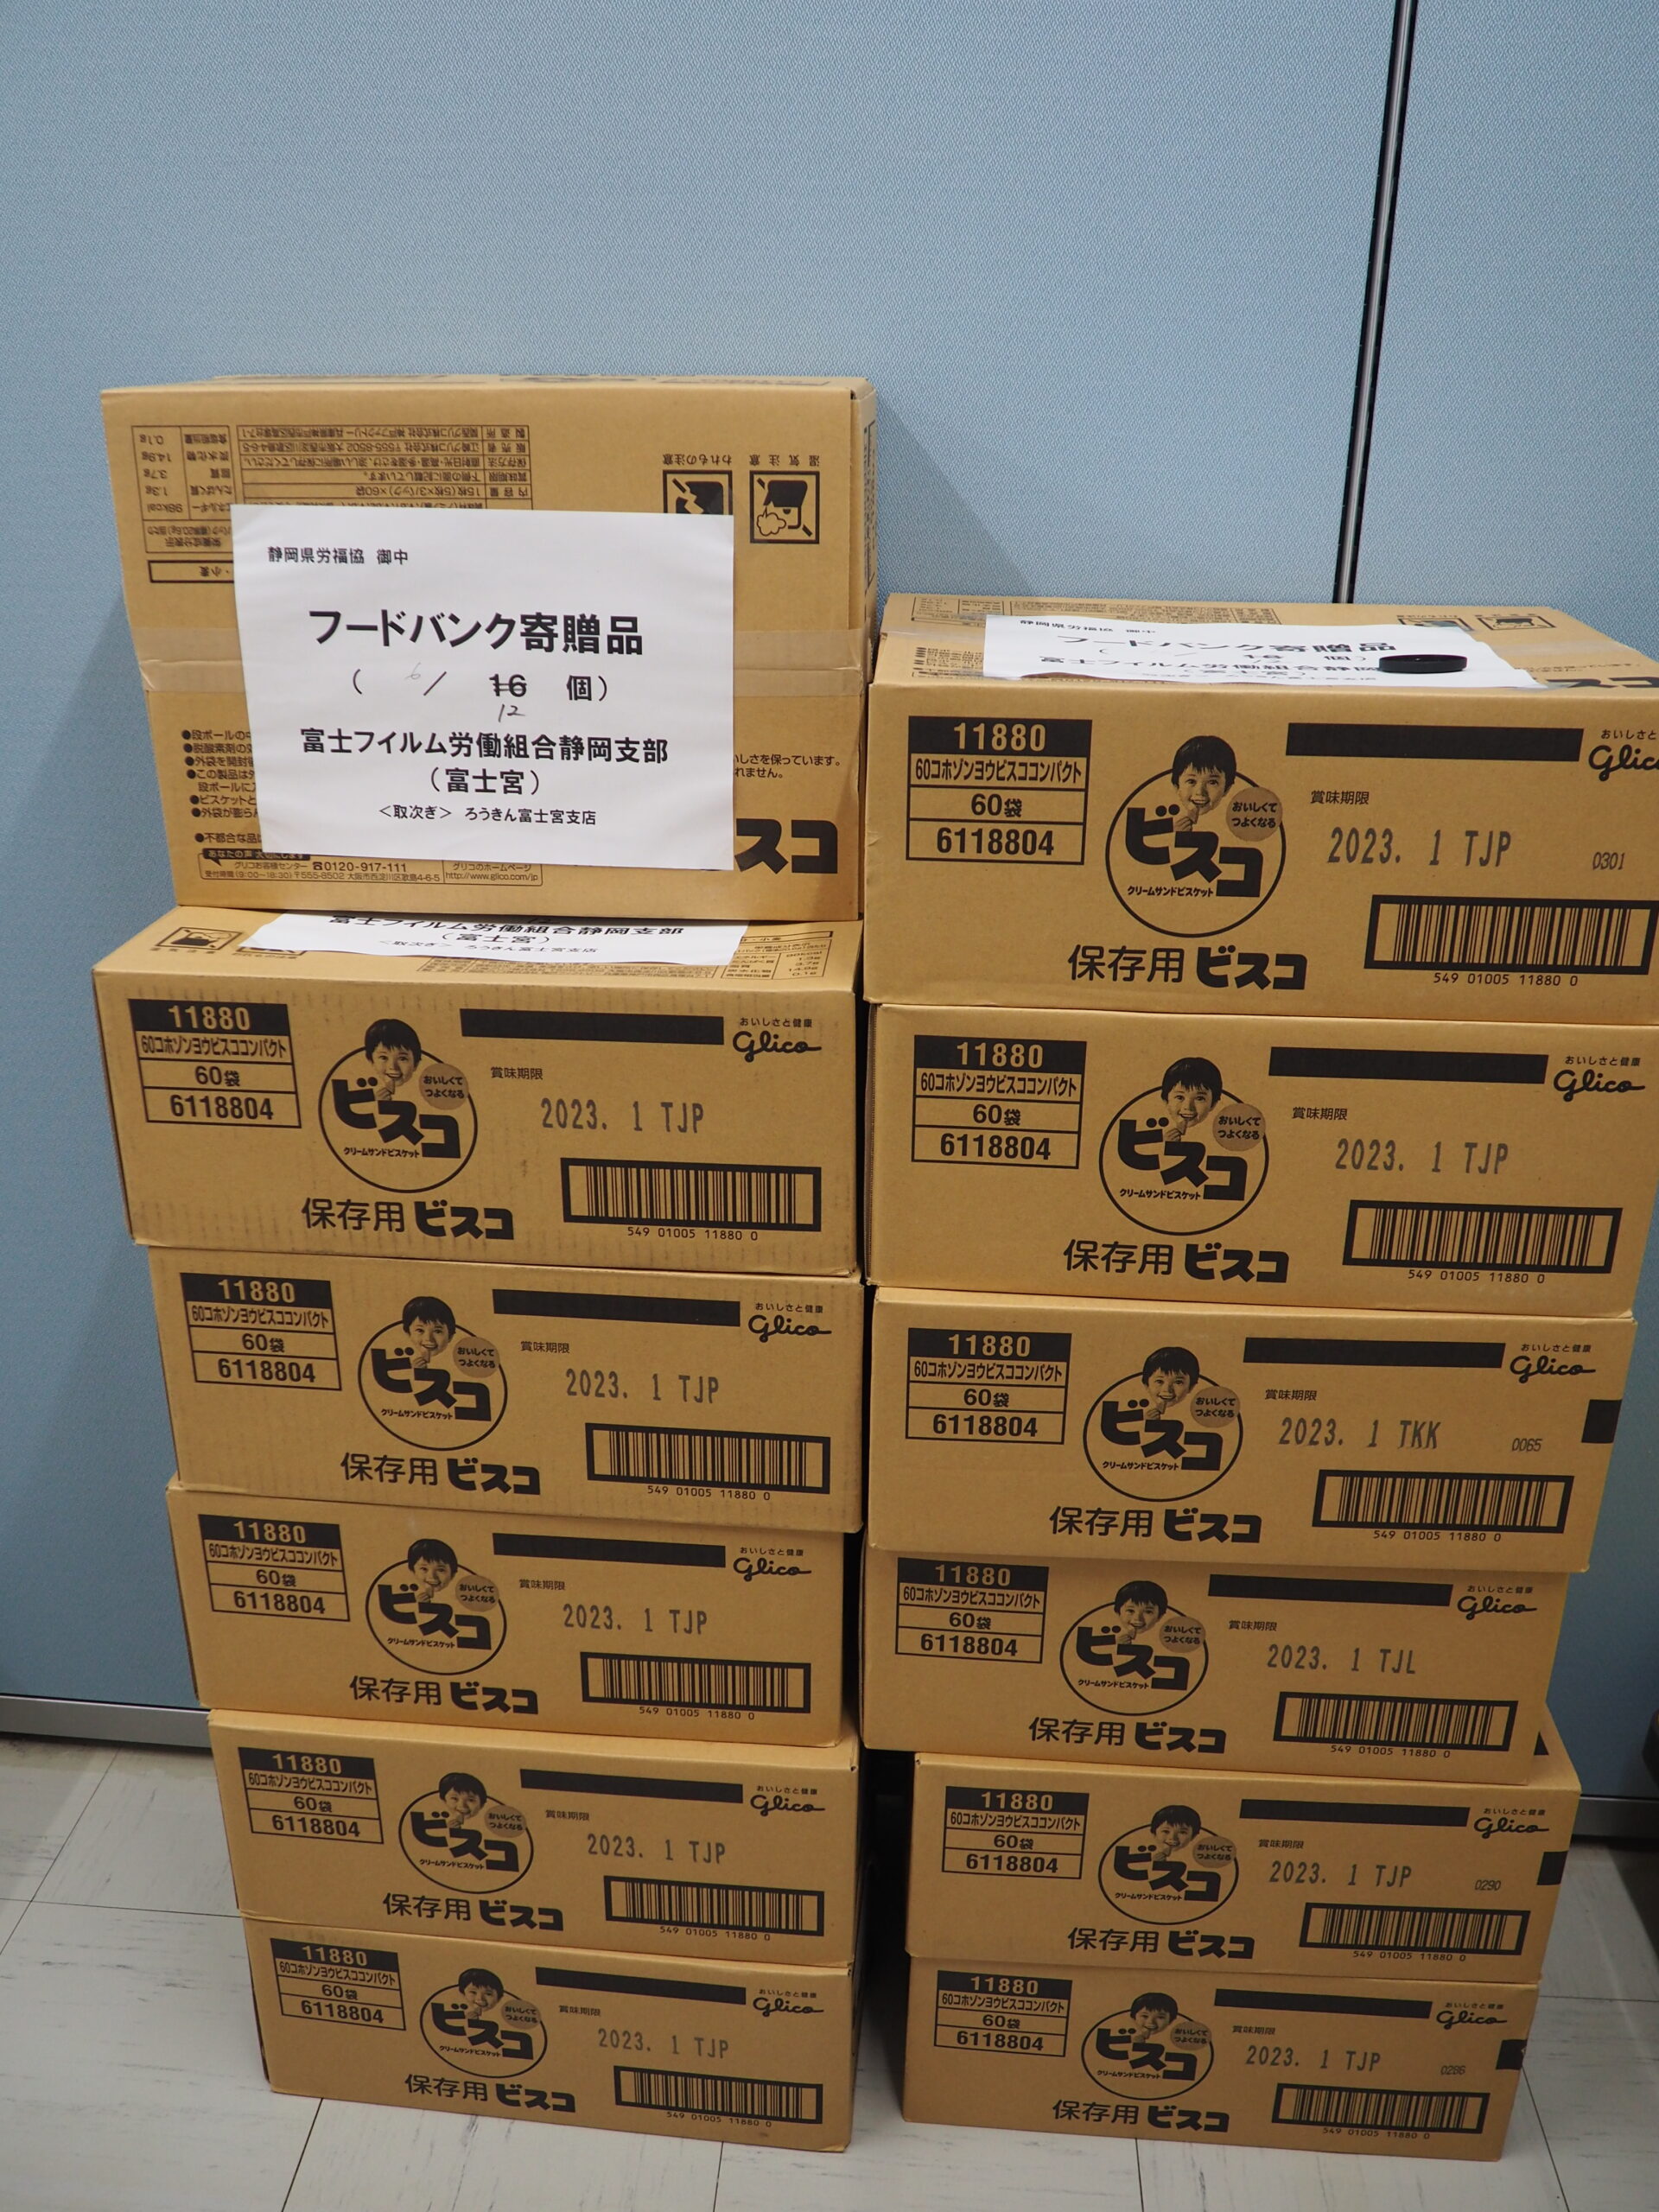 富士フイルム労働組合静岡支部様から食品を提供いただきました。